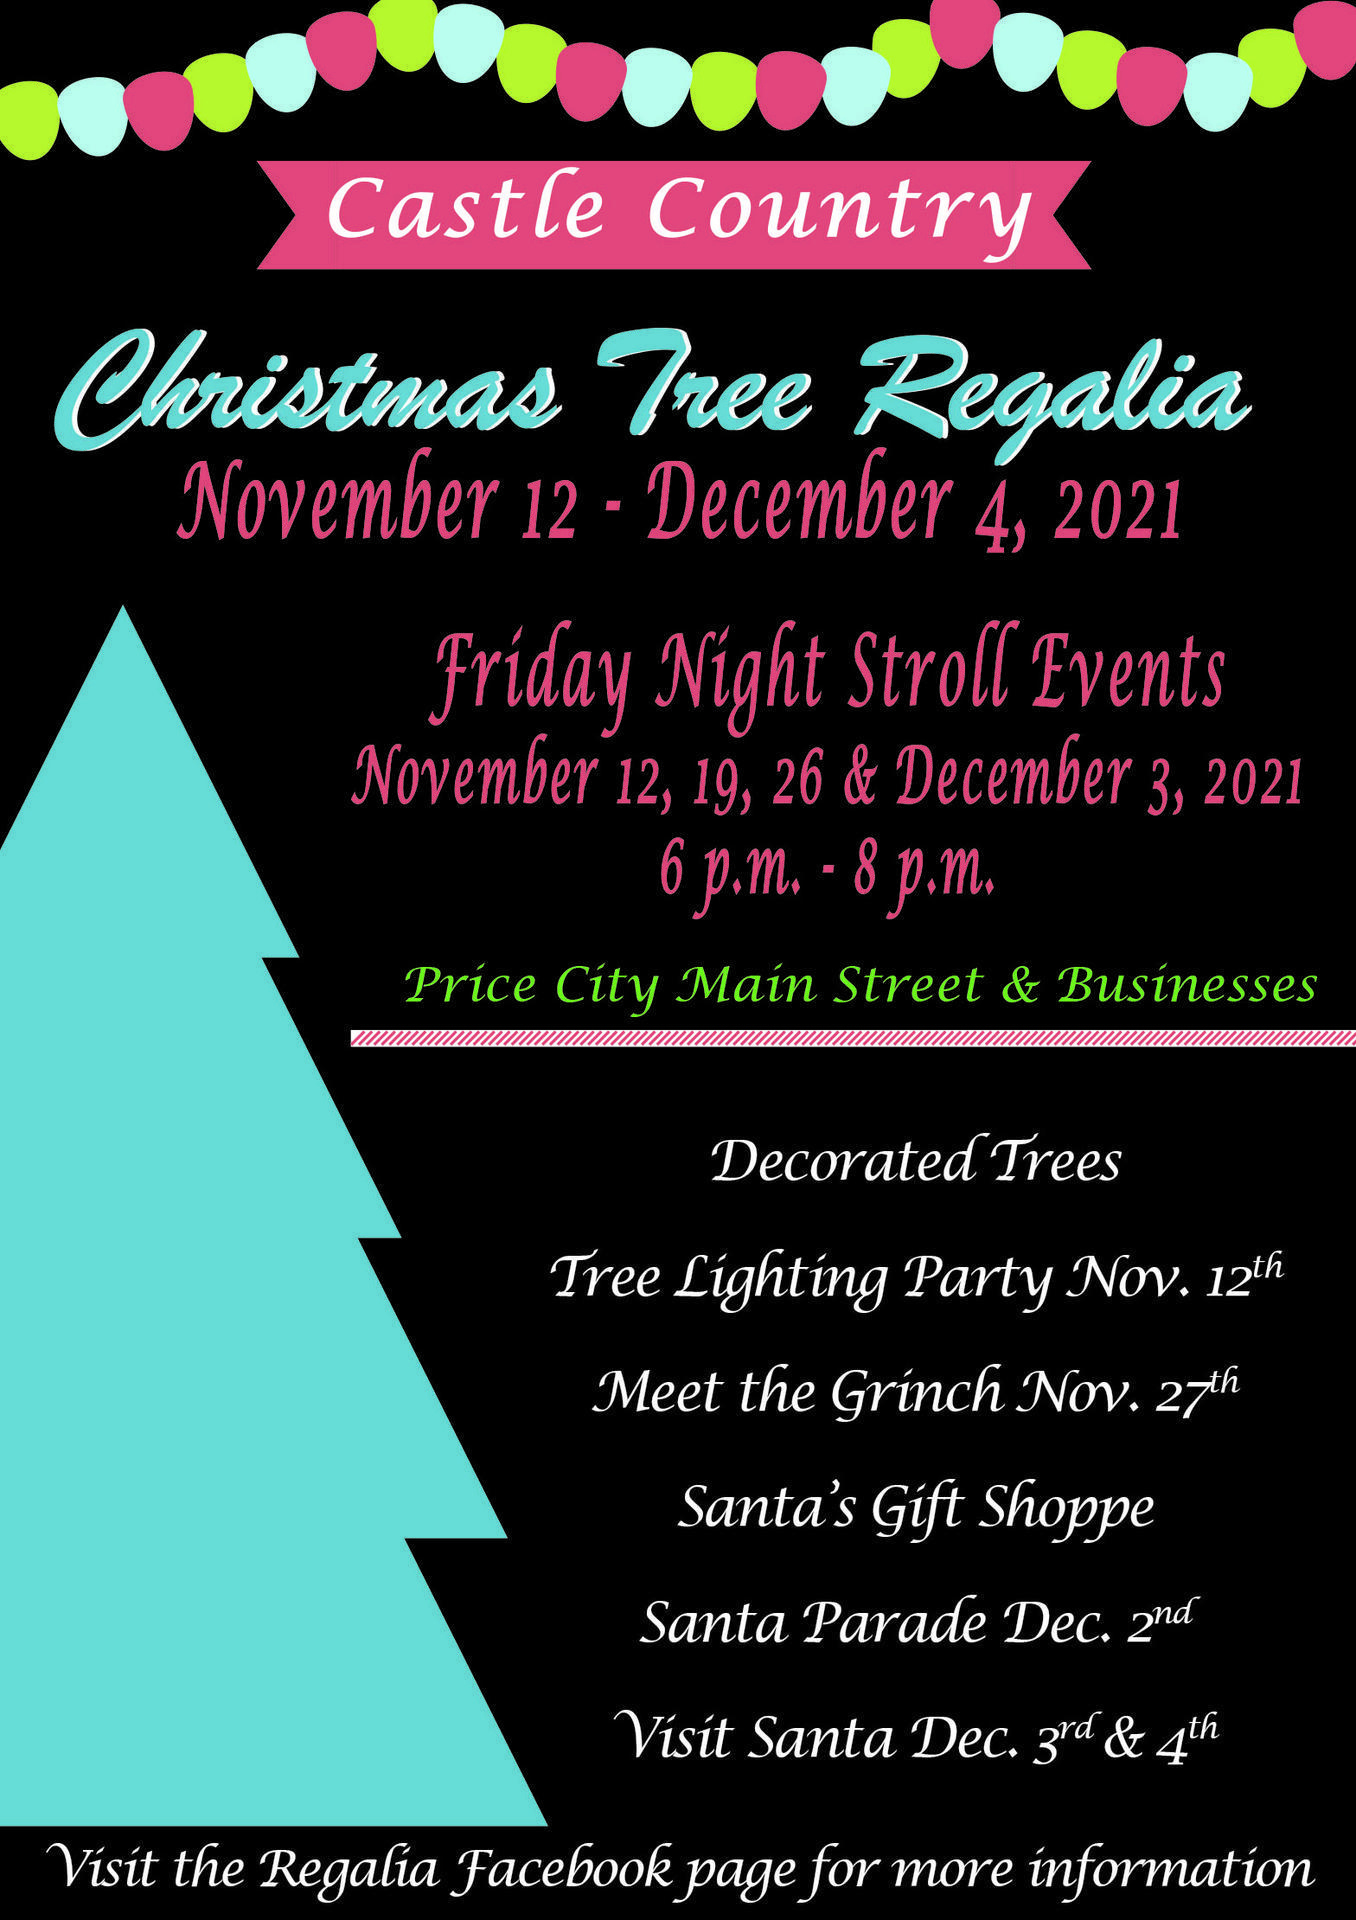 Christmas-Tree-Regalia-2021.jpg